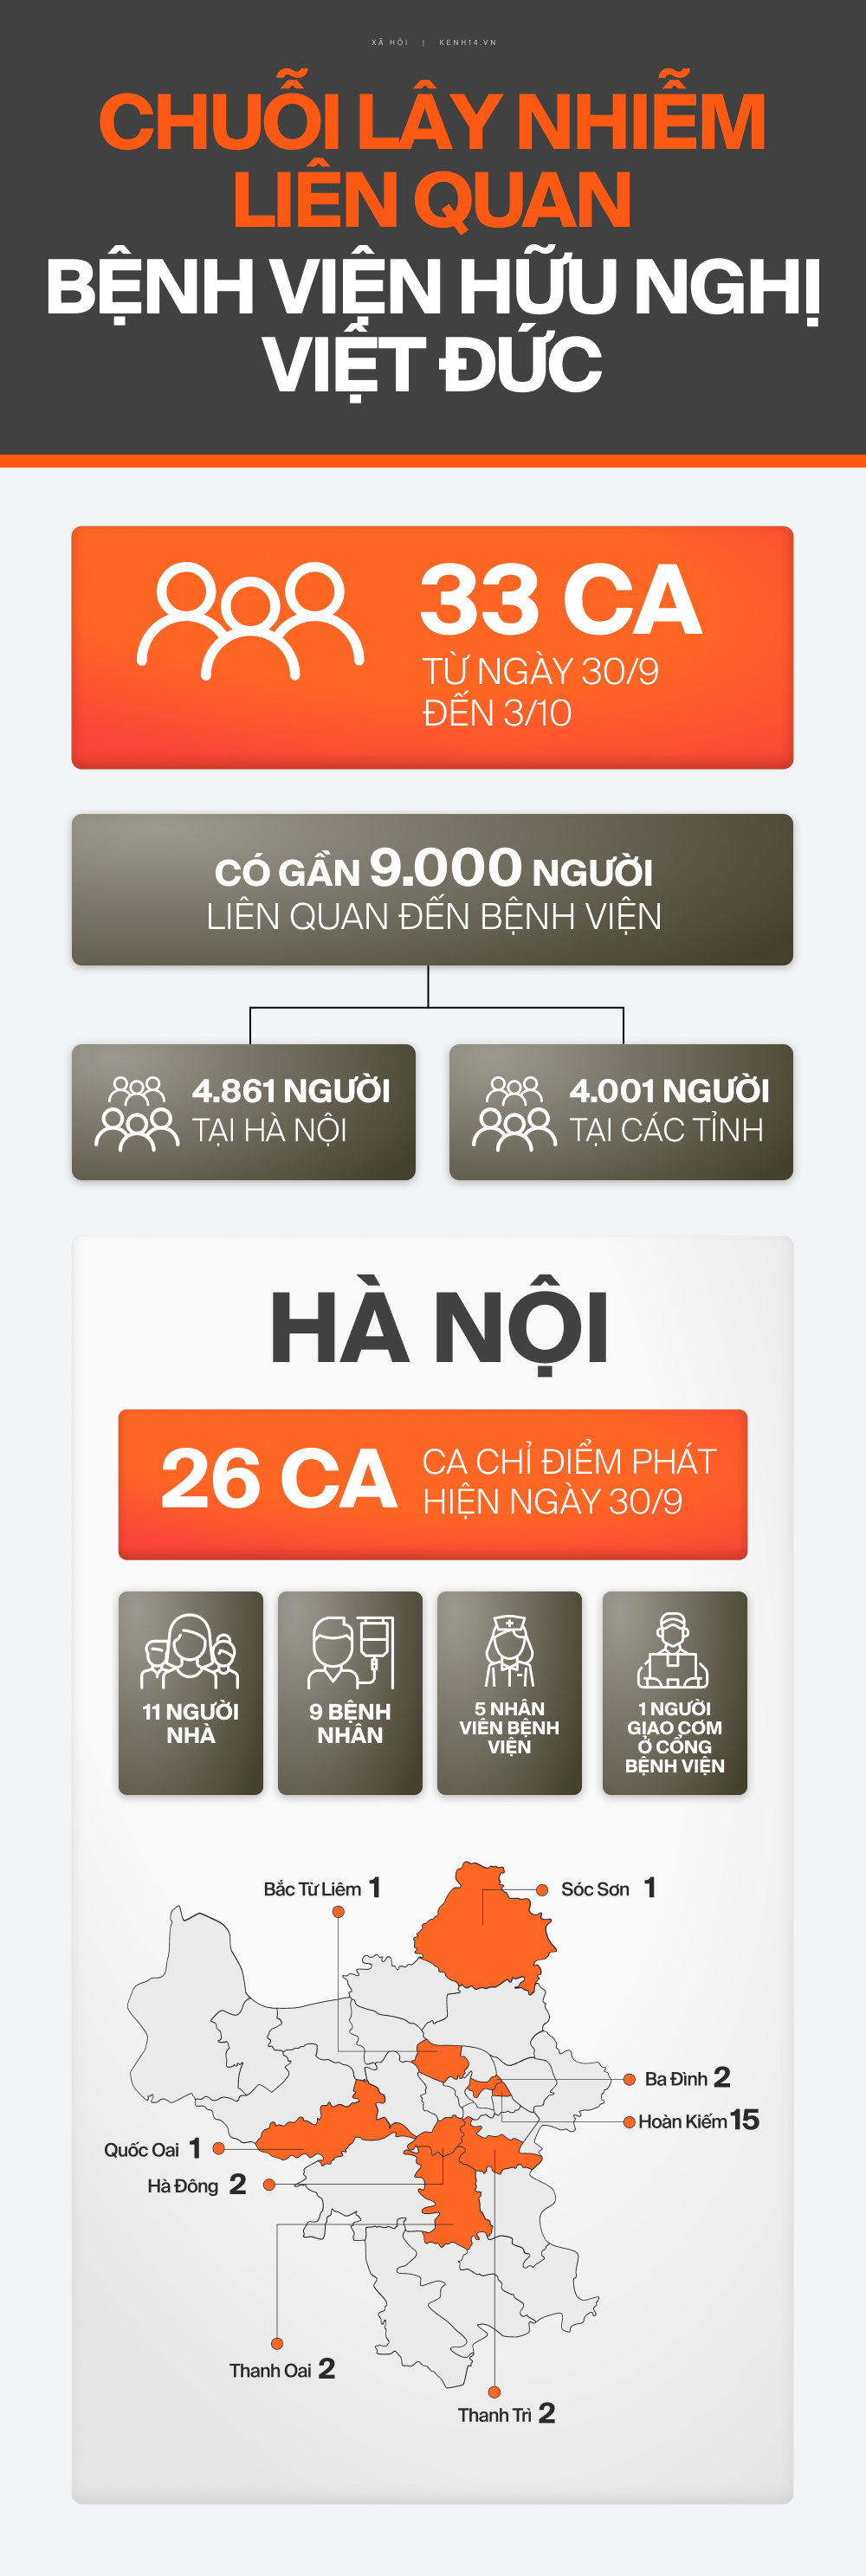 INFOGRAPHIC toàn cảnh chuỗi lây nhiễm BV Việt Đức: 4 ngày, 33 ca Covid-19 tại Hà Nội và 4 tỉnh, thành khác - Ảnh 1.